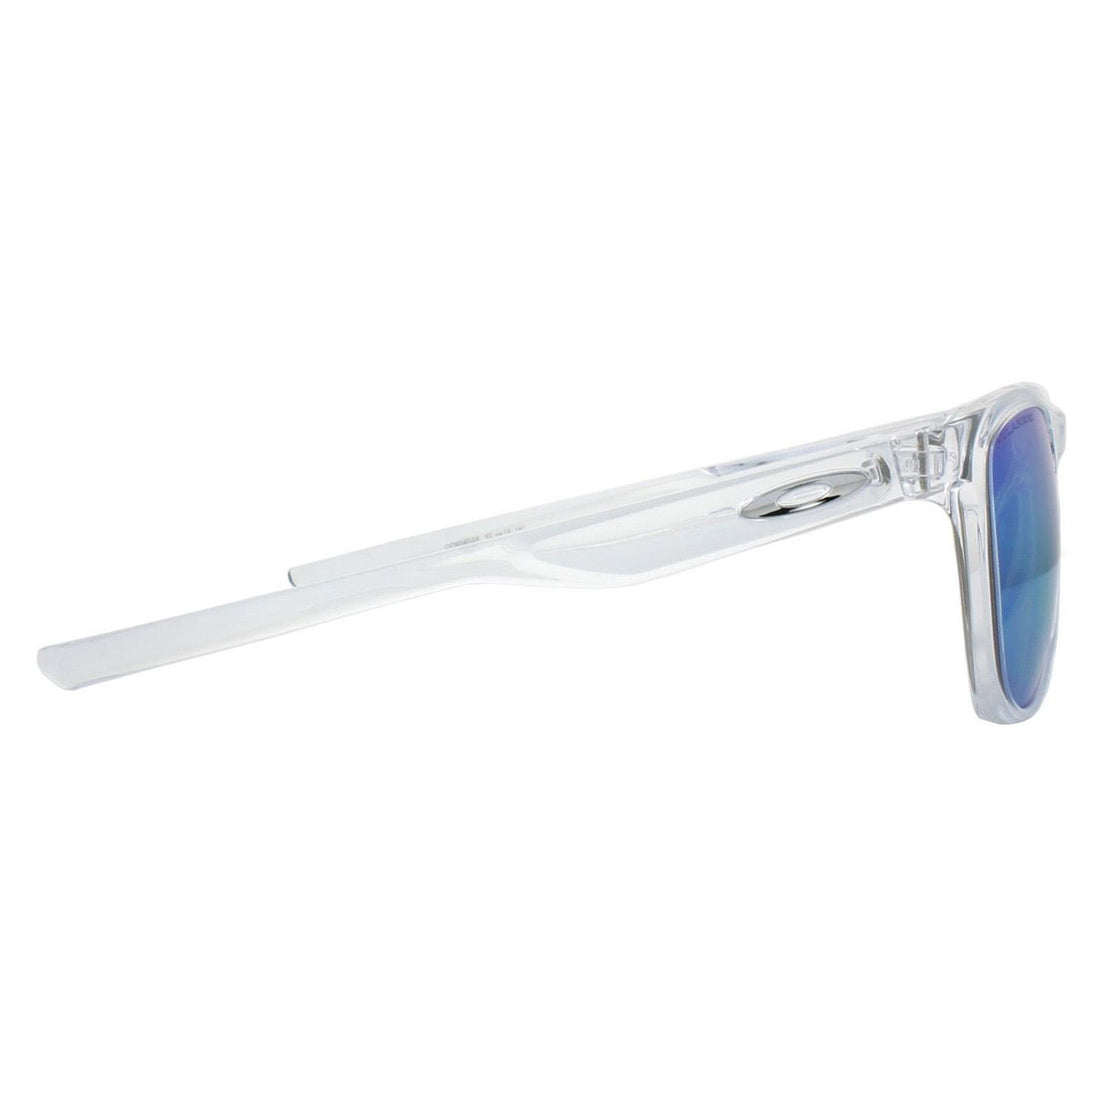 Oakley Trillbe X oo9340 Sunglasses